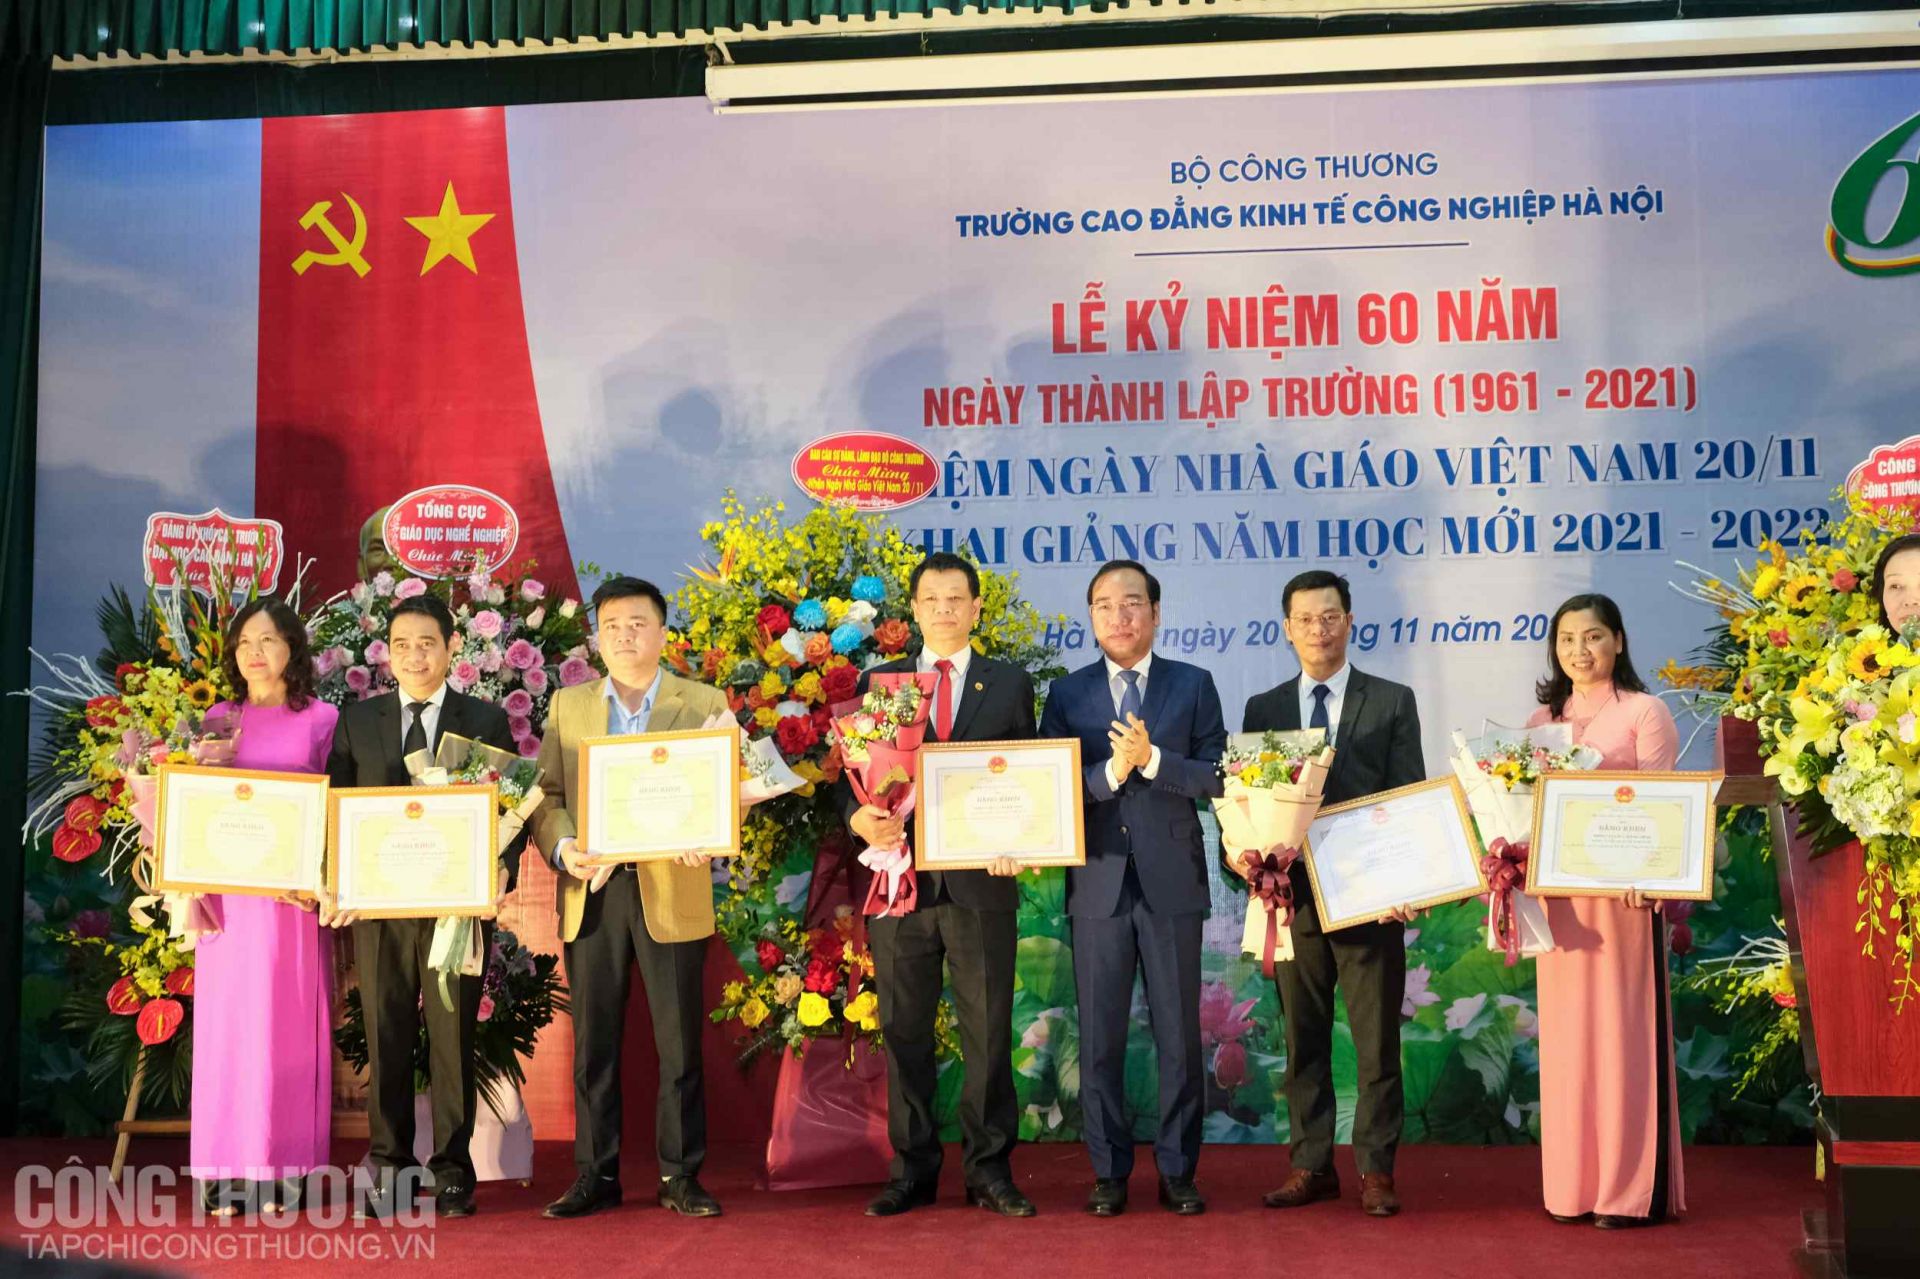 Chủ tịch Công đoàn Công Thương Việt Nam Trần Quang Huy trao tặng Bằng khen của Bộ trưởng Bộ Công Thương và Cờ thi đua của Tổng Liên đoàn Lao động Việt Nam cho cá nhân, tập thể Trường Cao đẳng Kinh tế Công nghiệp Hà Nội